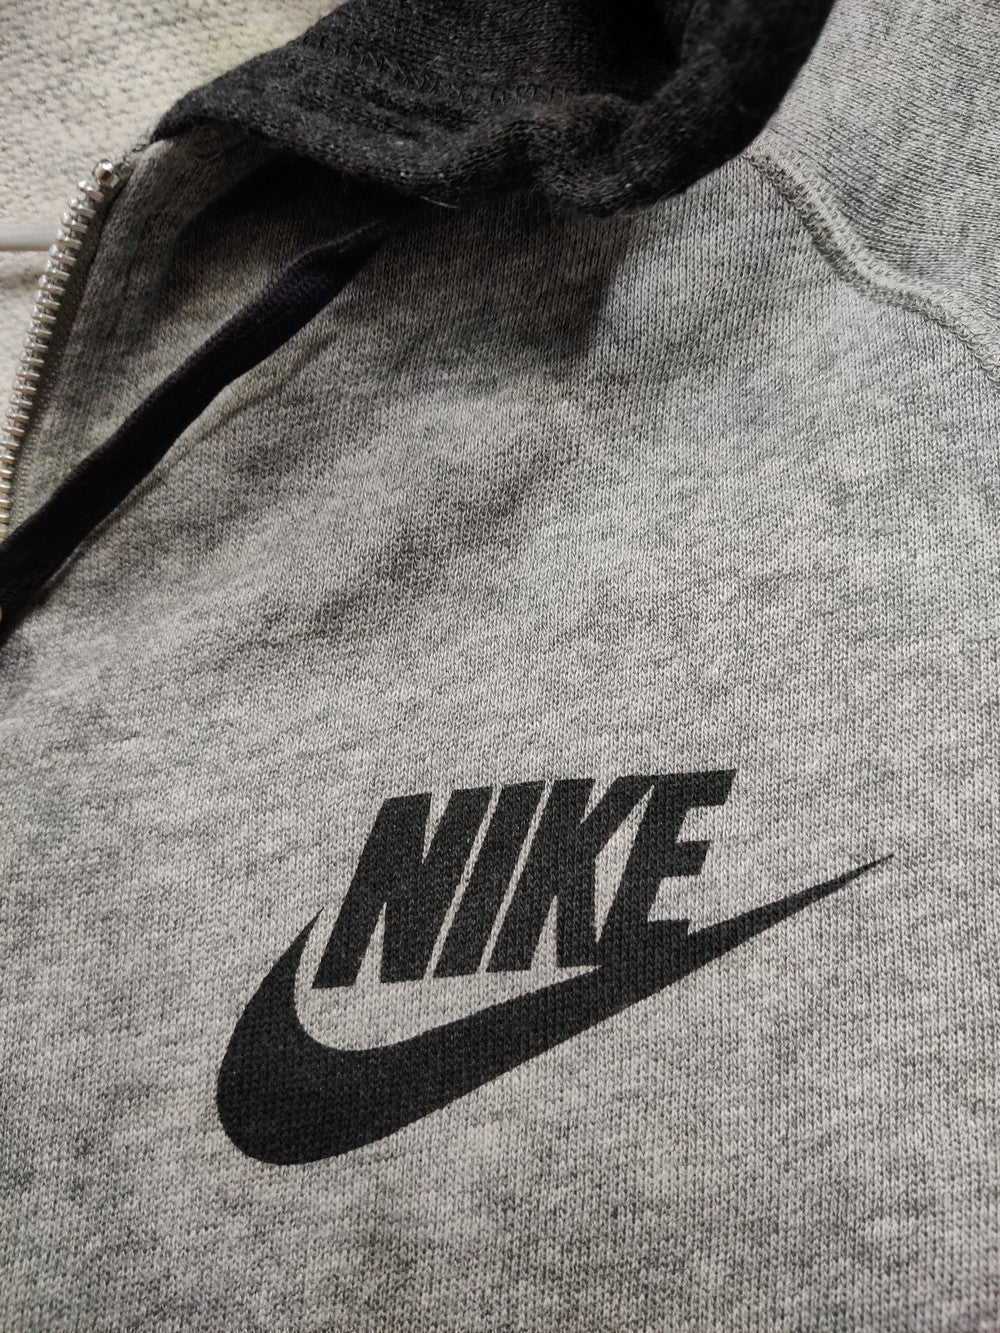 Nike Branded Original Hood Zipper For Men